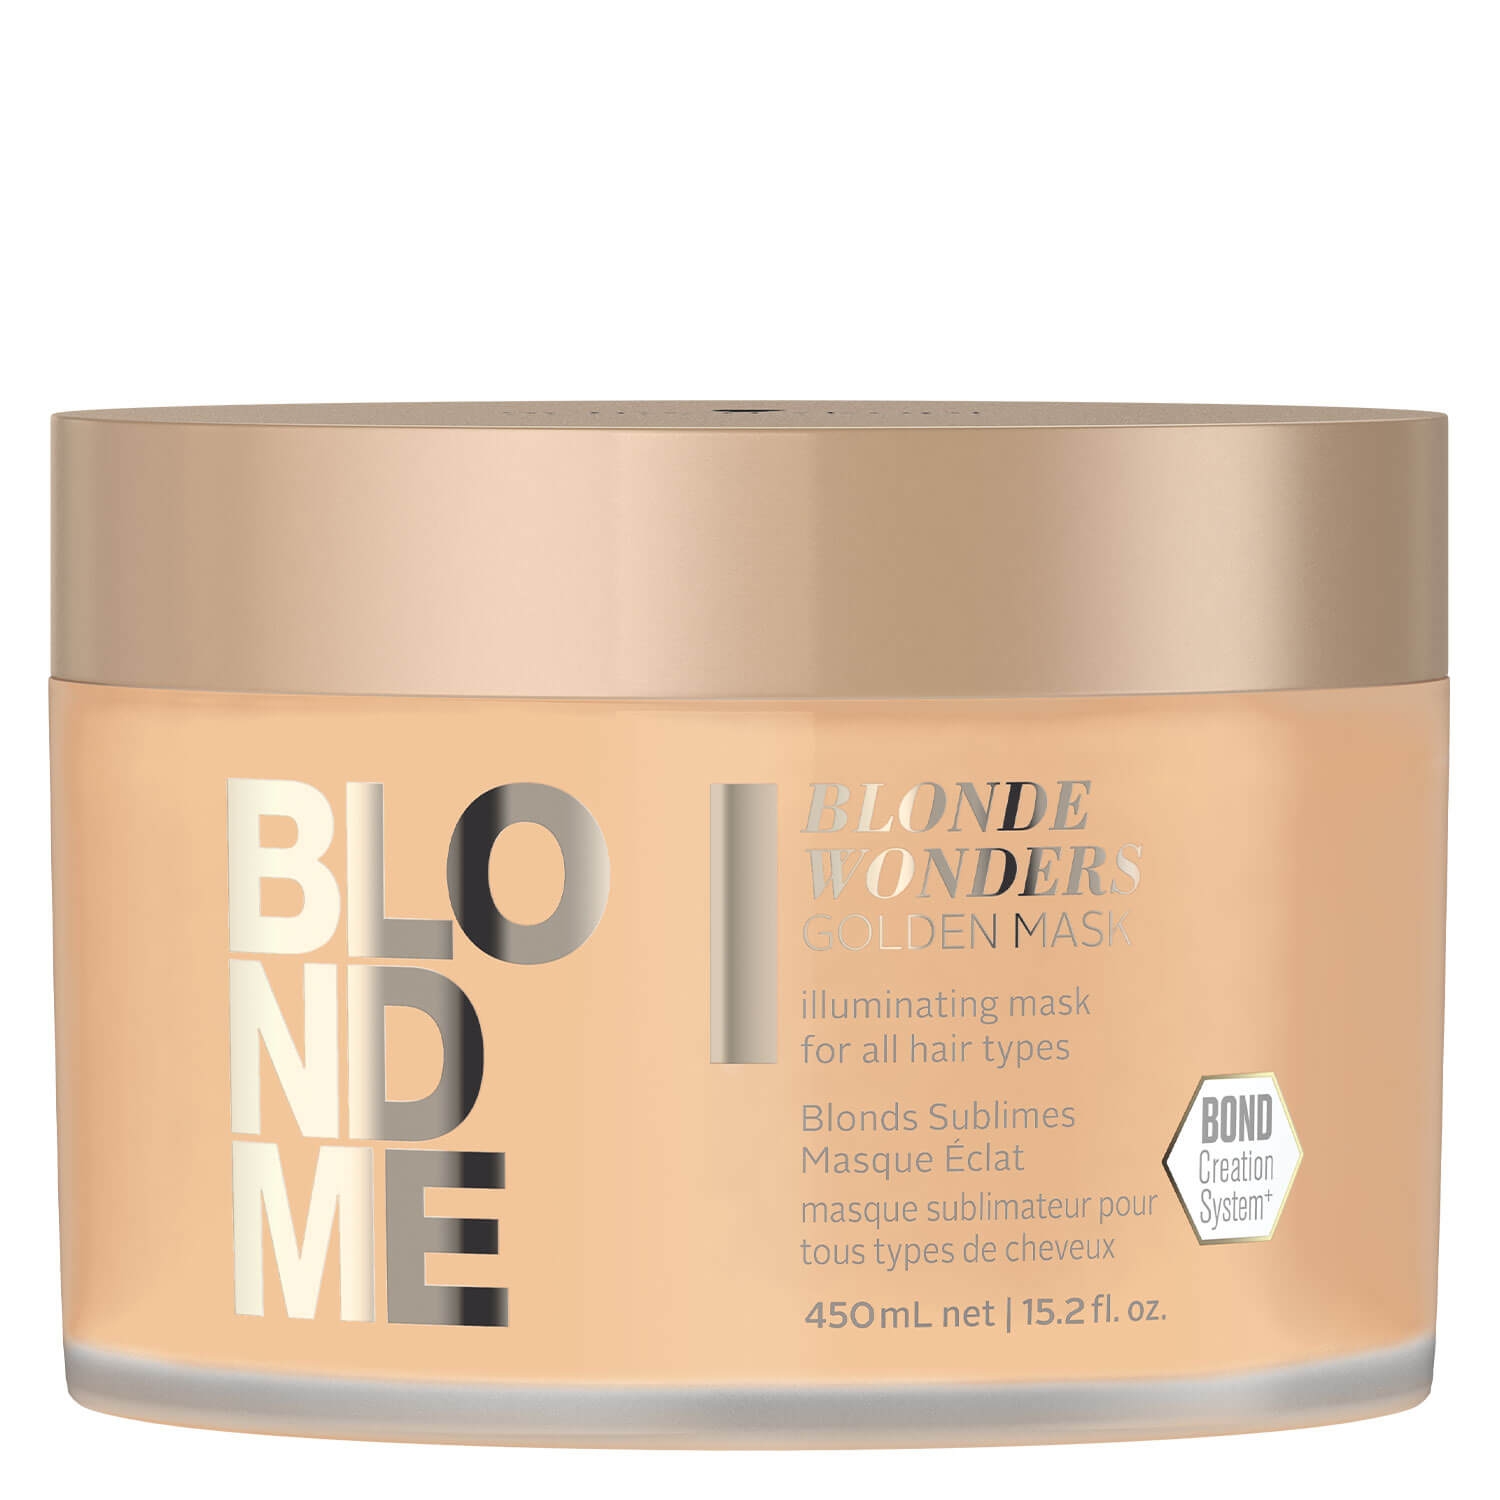 Produktbild von Blondme - Blonde Wonders Golden Mask